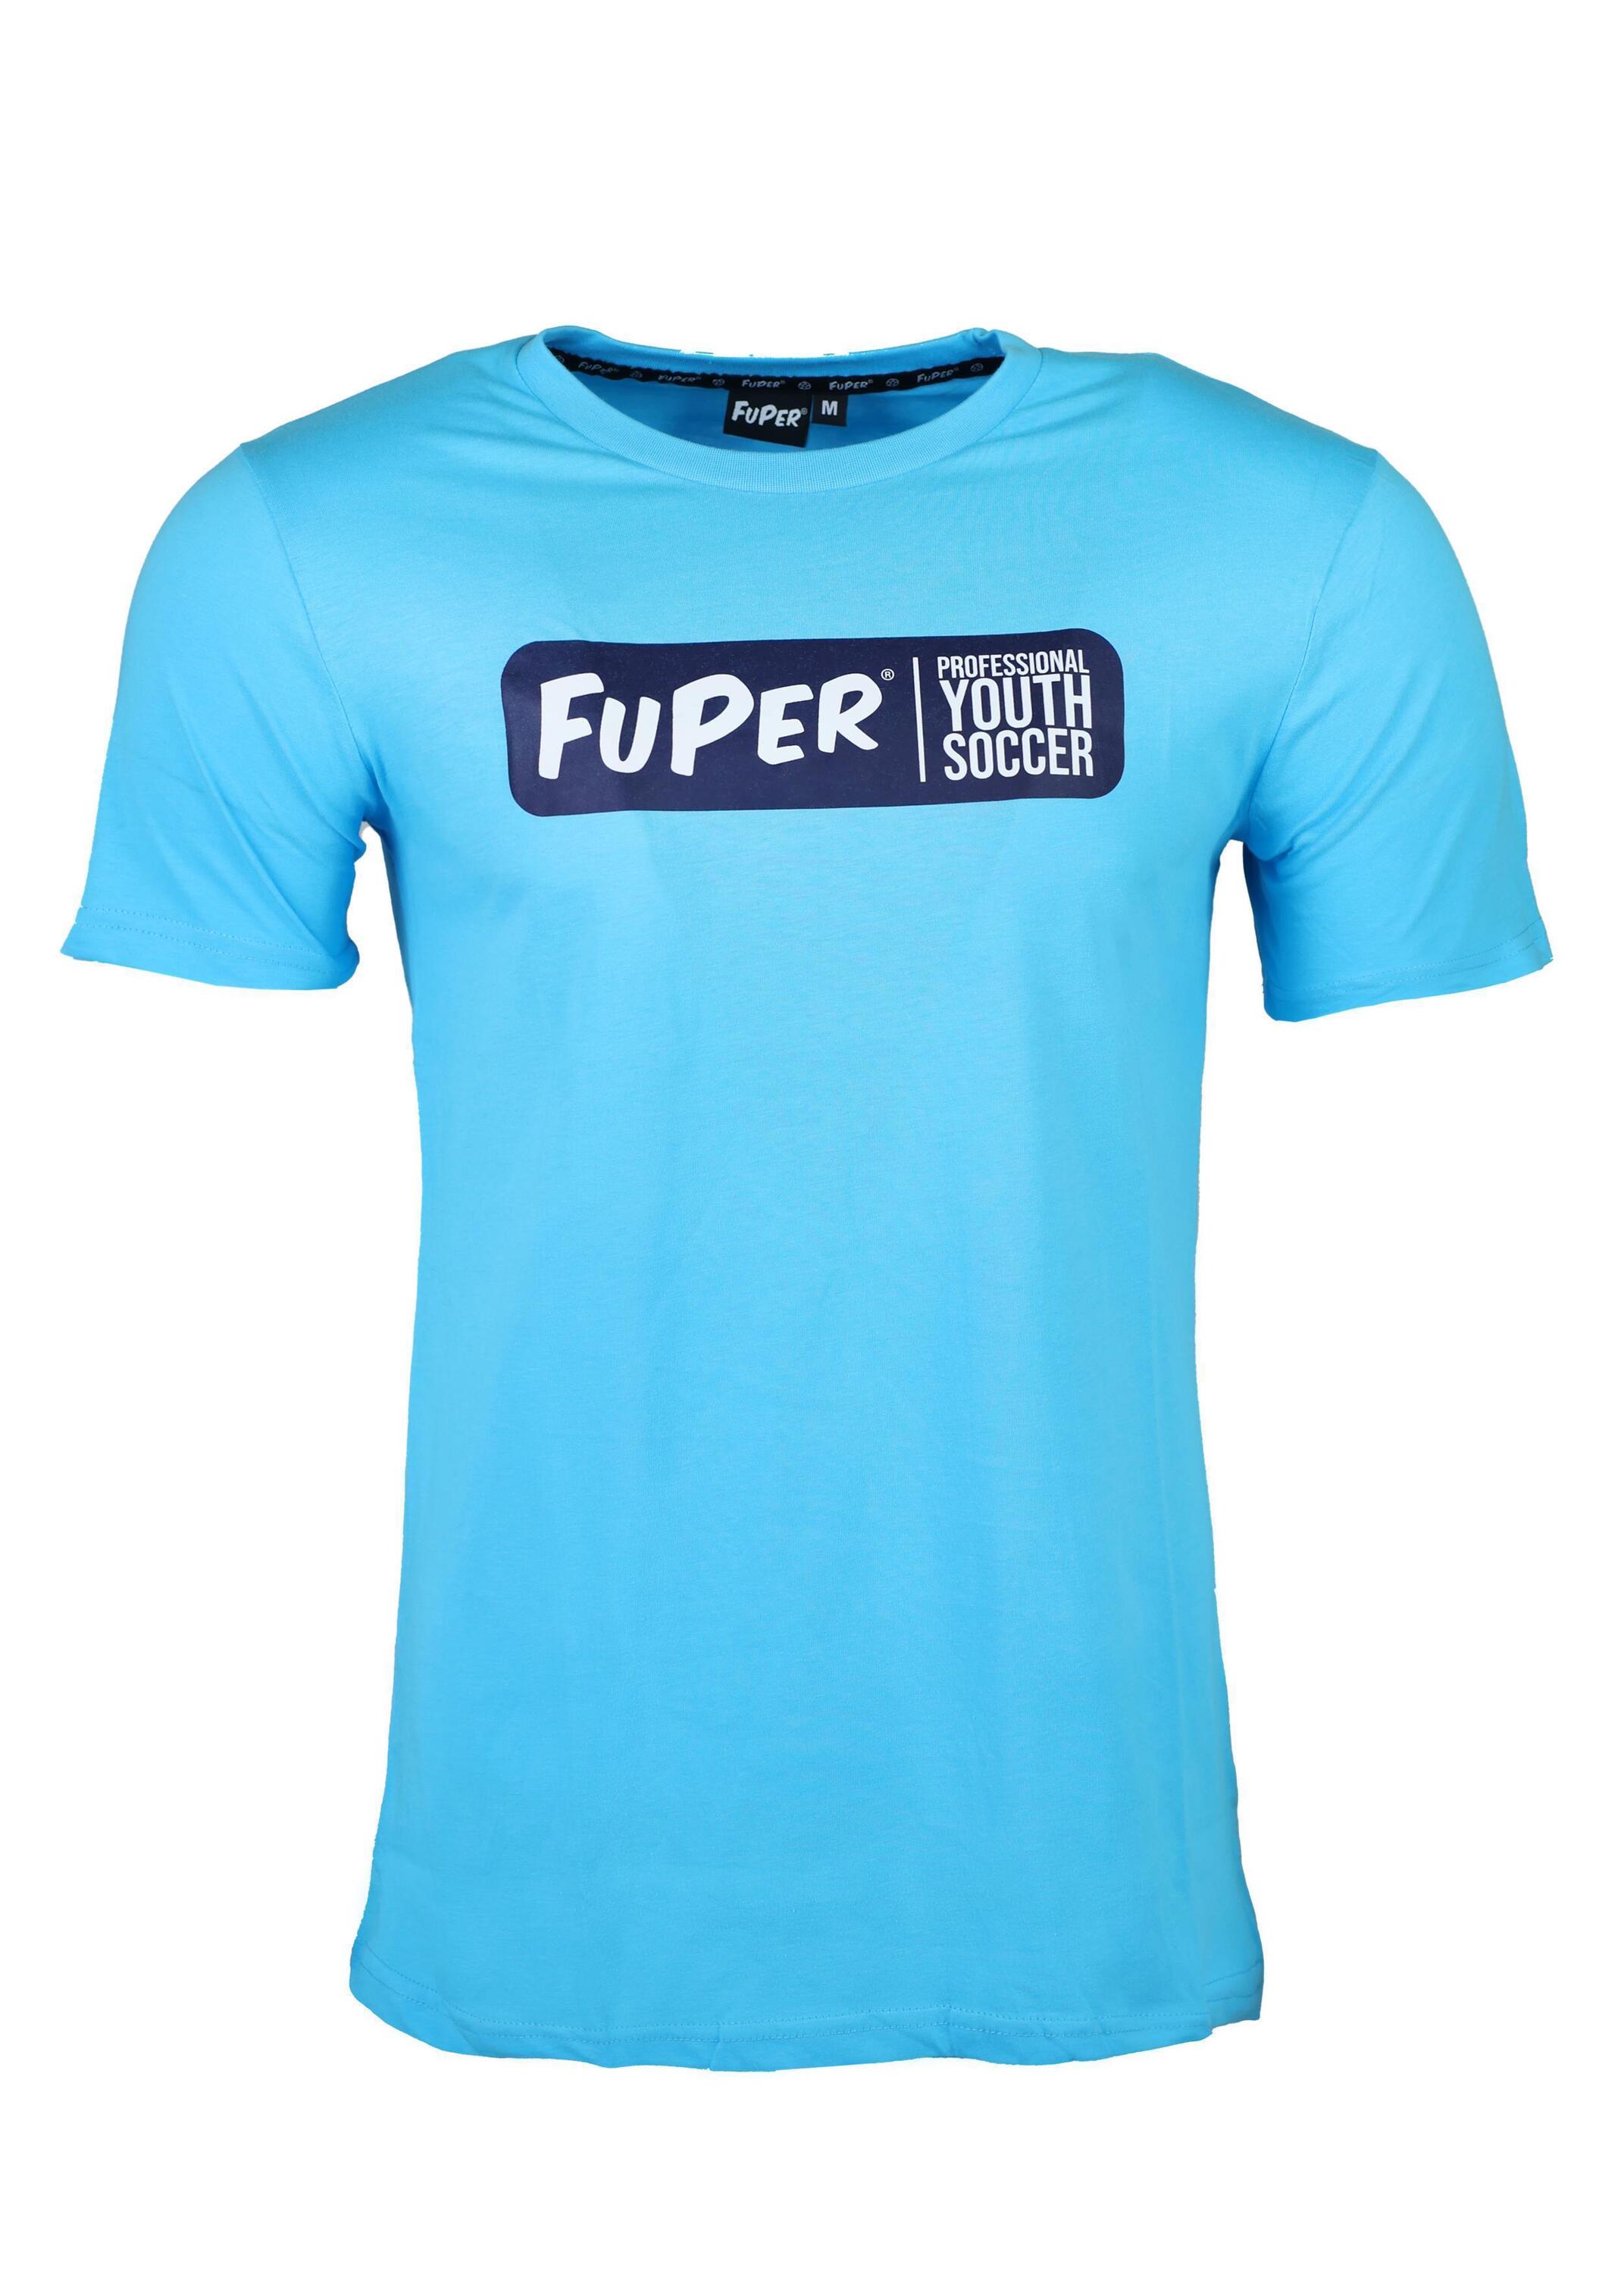 Футболка FuPer Performance Juri, синий